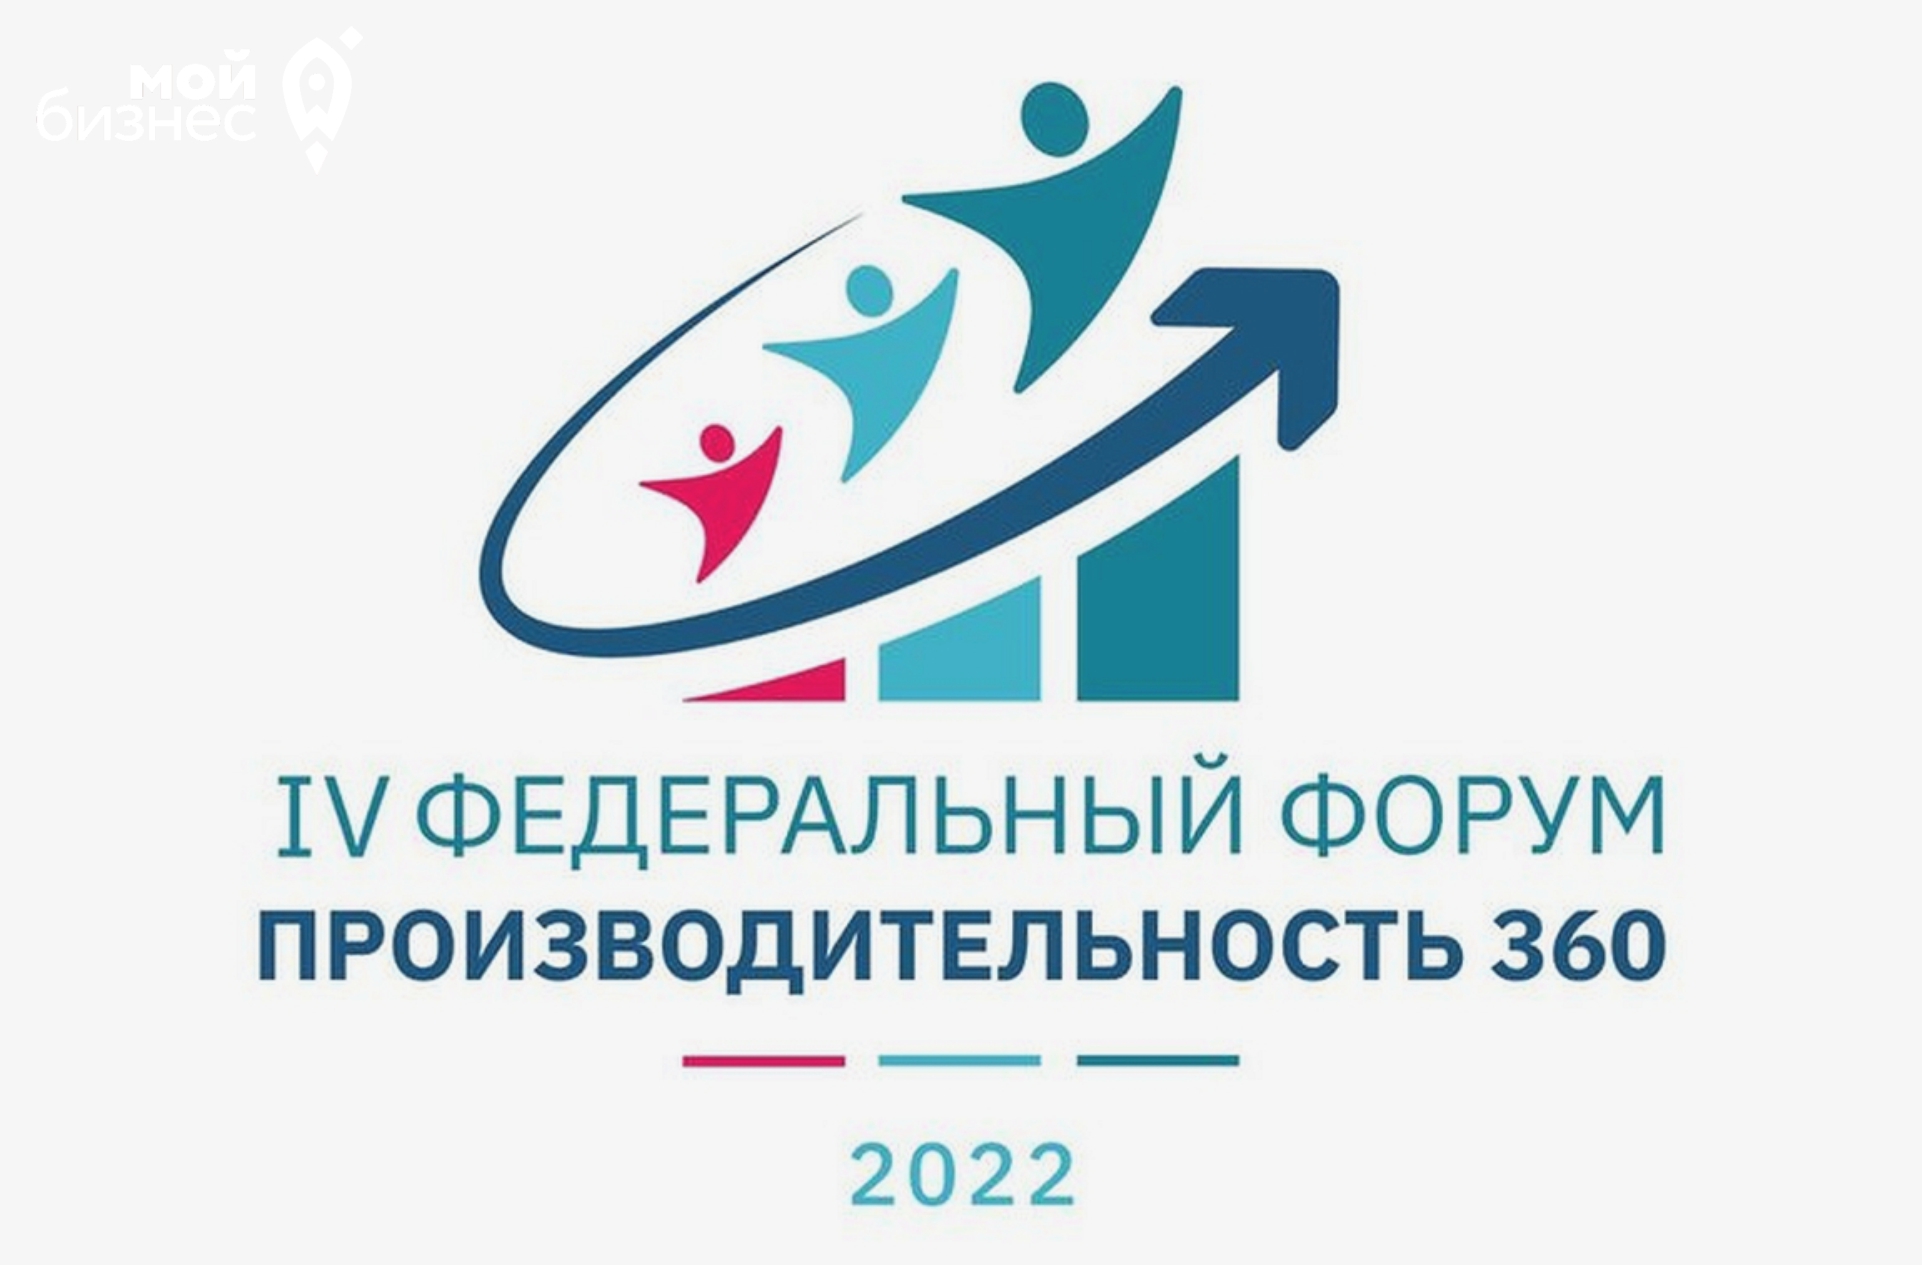 Волгоградцев приглашают принять участие в IV федеральном форуме «Производительность 360»